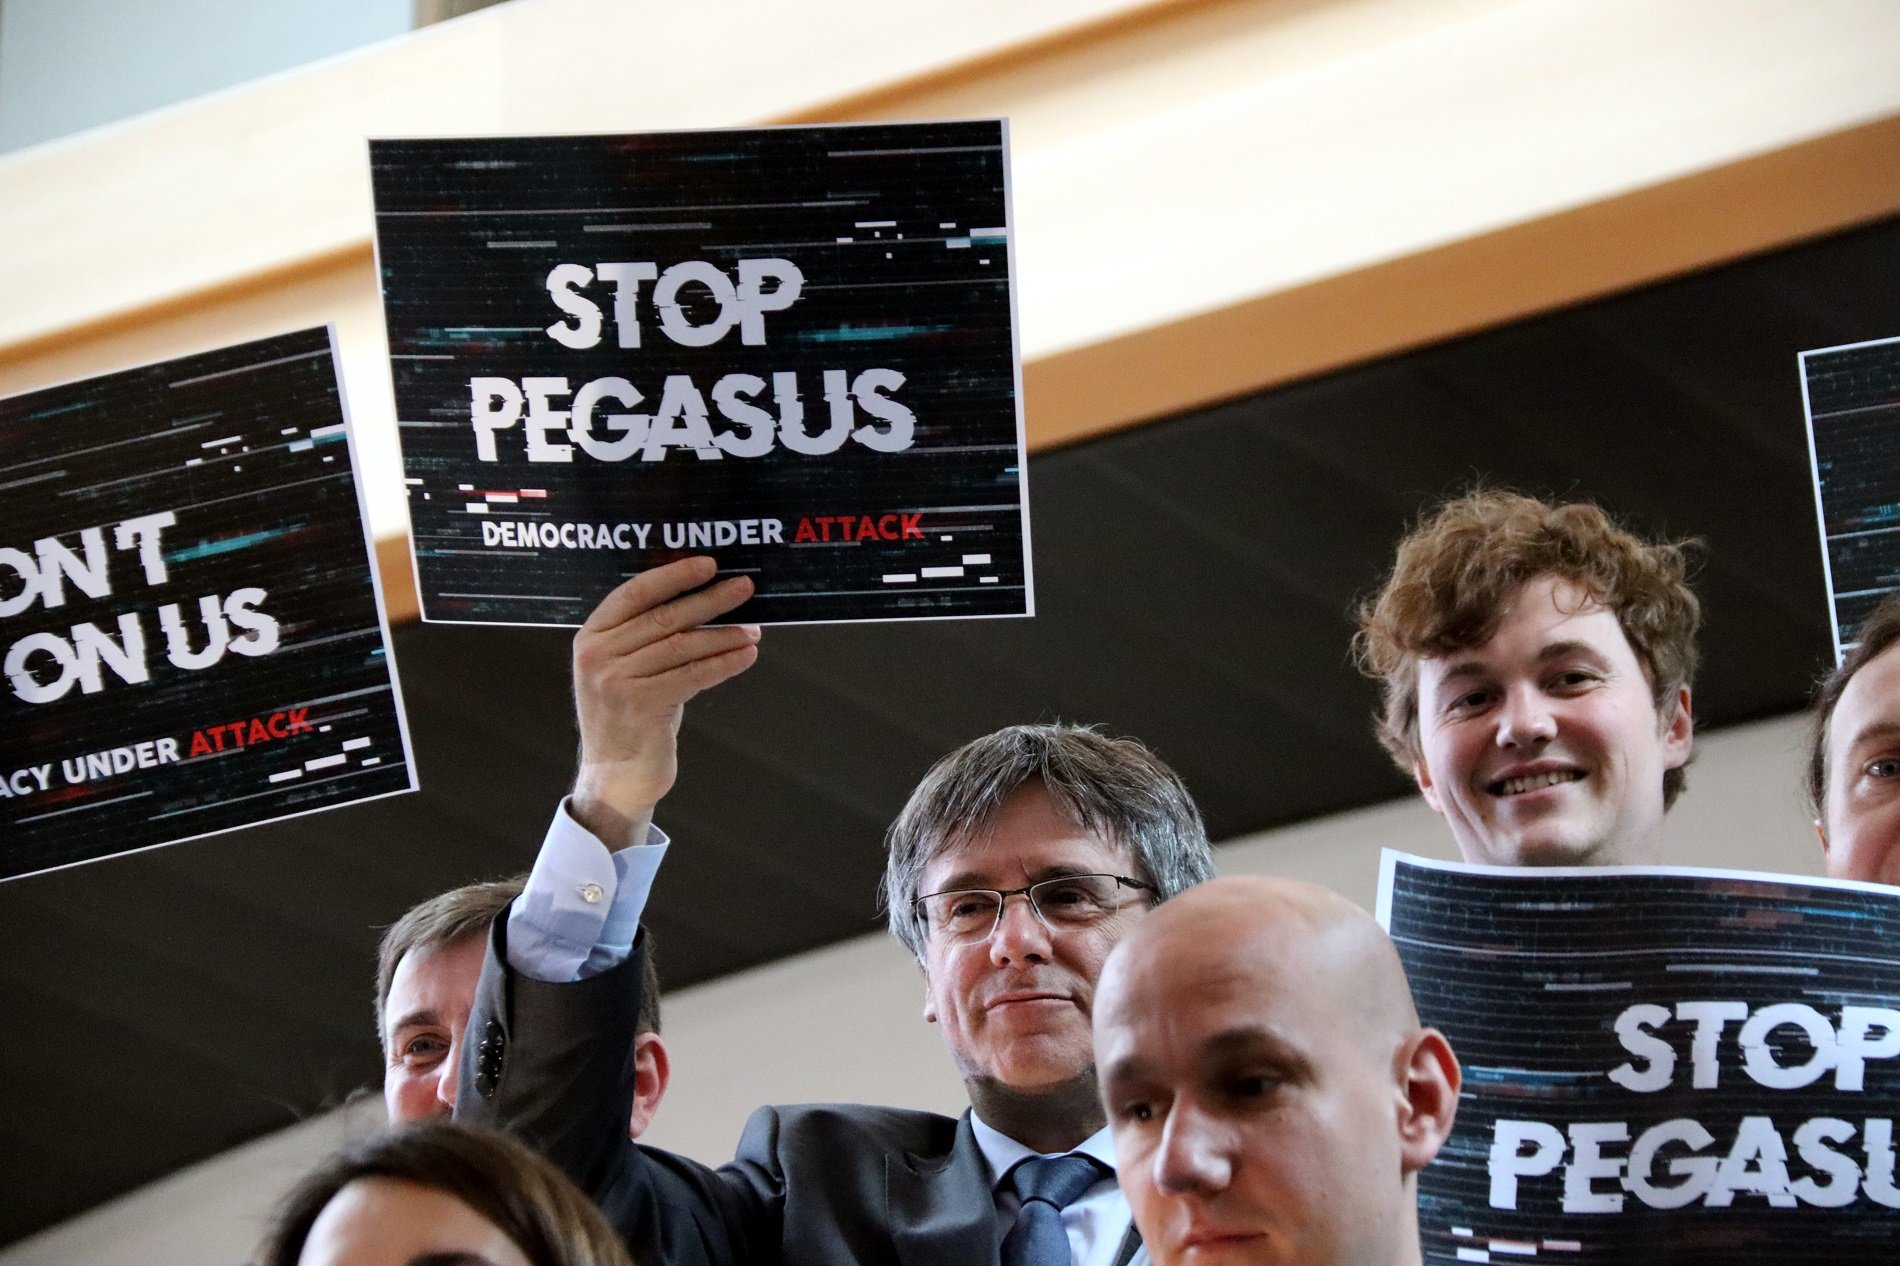 La comissió Pegasus de l'Eurocambra assenyala el govern espanyol com a responsable del CatalanGate